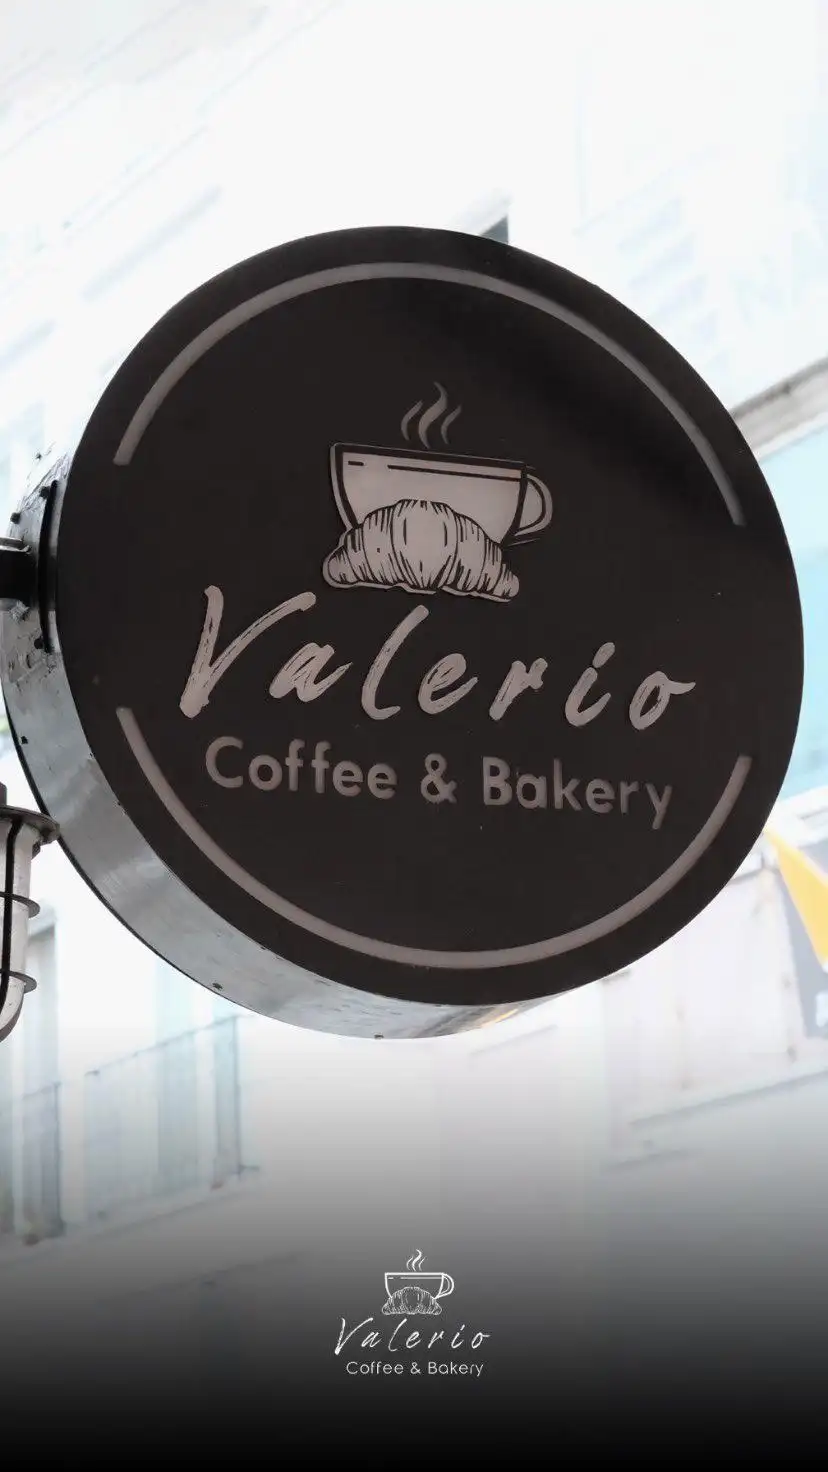 Valerio Coffee & Bakery